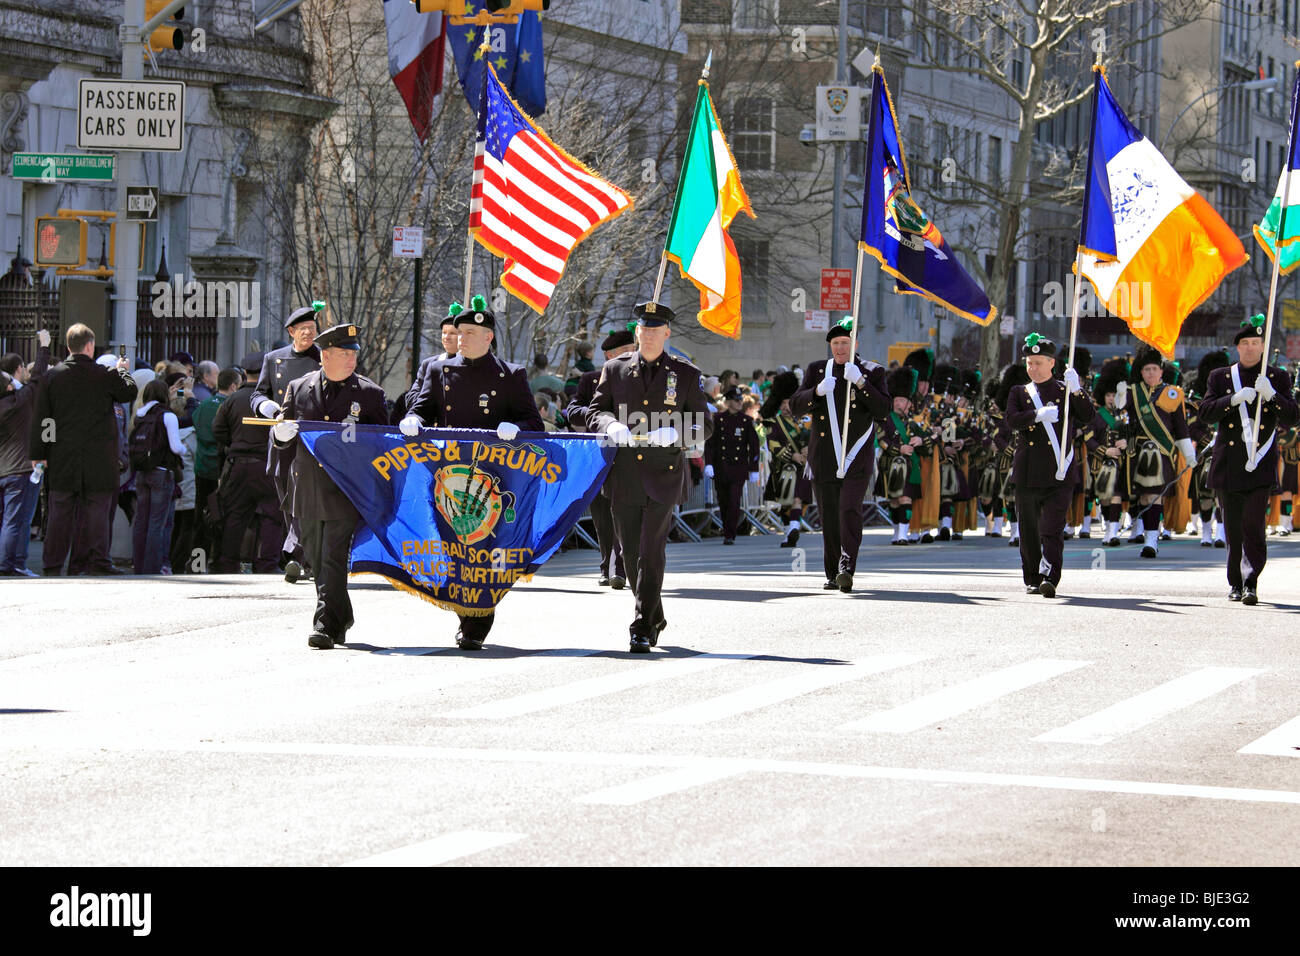 New York City Polizei-Abteilung Emerald Gesellschaft Pipes and Drums Blaskapelle auf der 5th Avenue in Manhattan St. Patrick's Day parade Stockfoto